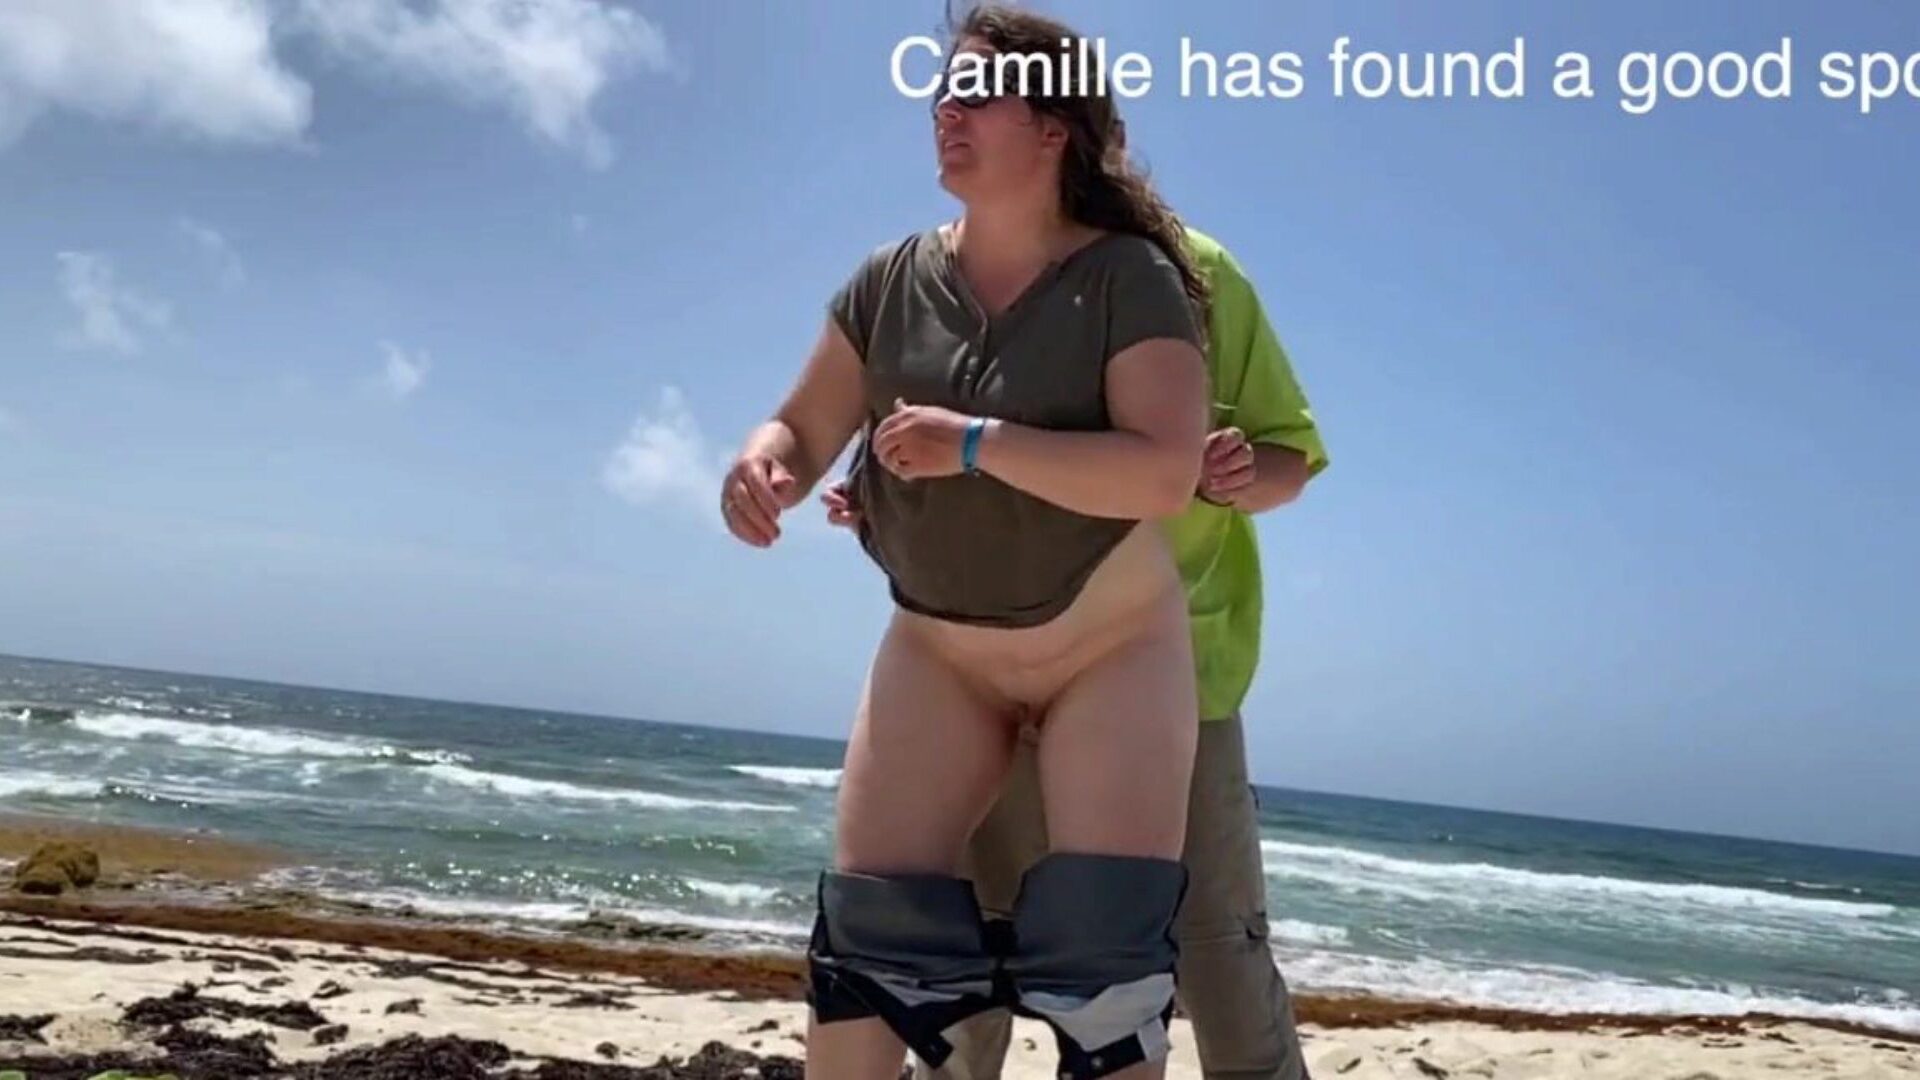 卡米尔（Camille）看着在海滩上驼峰卡米尔（Camille）发现了一个珍贵的地方，有人观察到嘈杂，所以每个人都可以观看